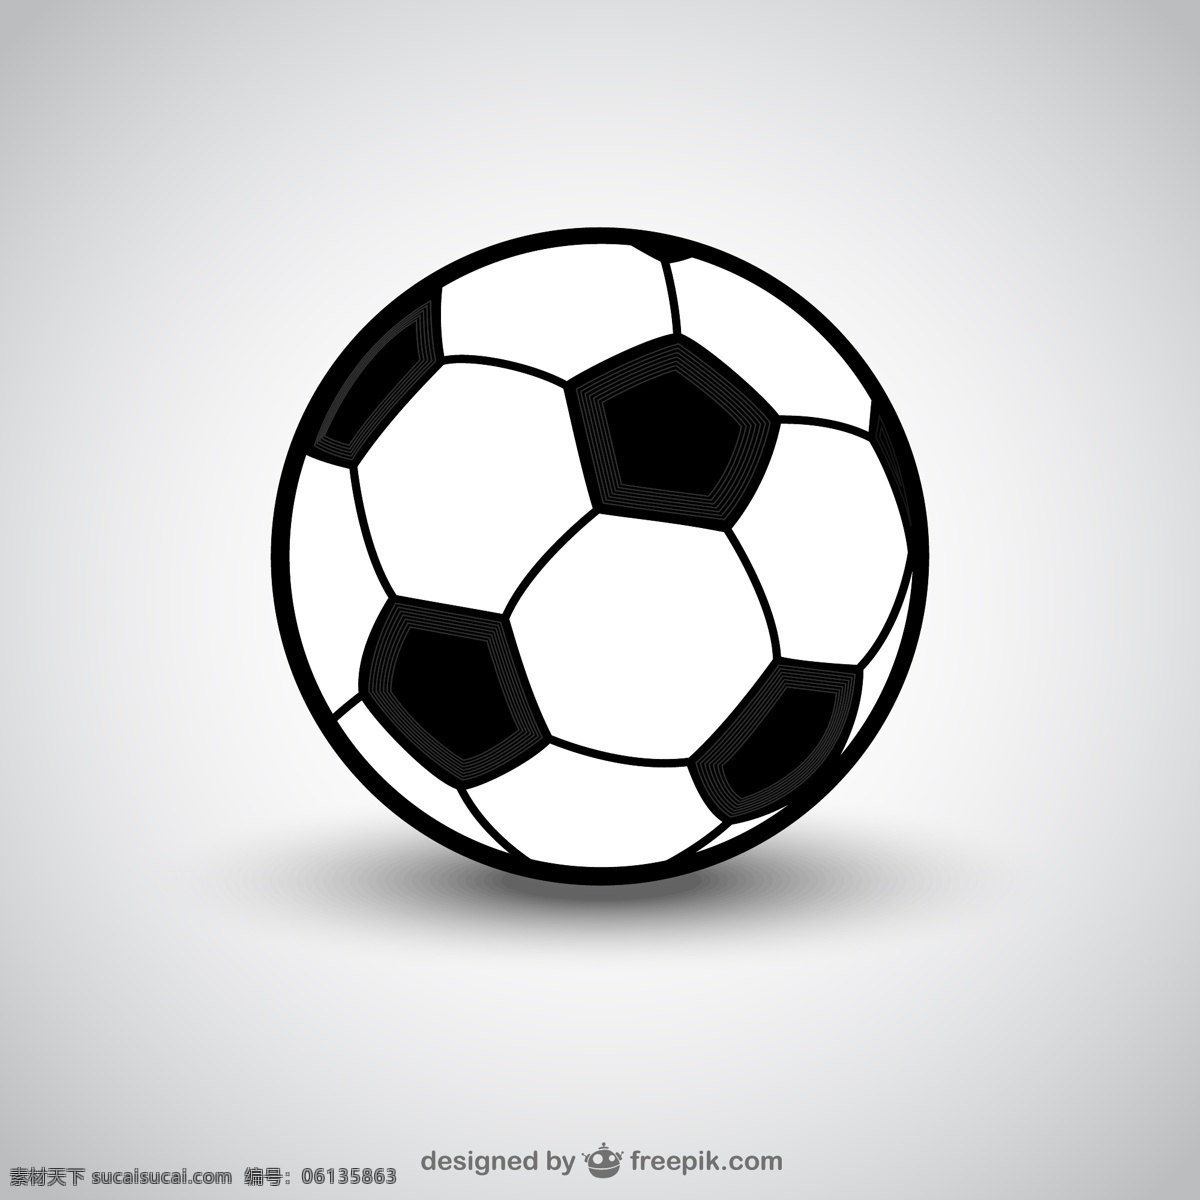 简单 黑白 矢量 足球 运动 健身 世界杯 欧洲杯 亚洲杯 黑白足球 矢量足球 白色